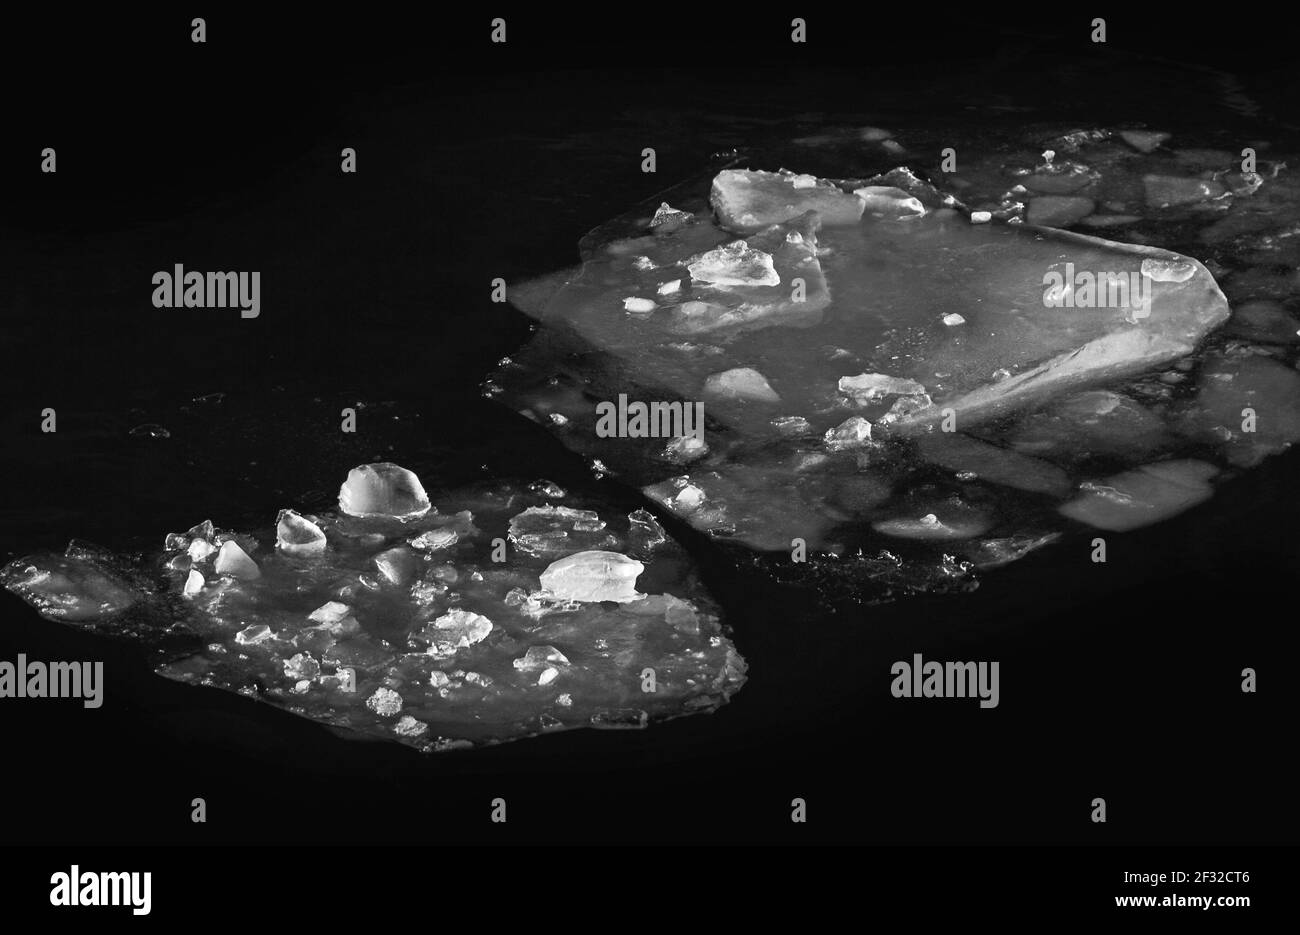 De magnifiques floes de glace dans l'eau sombre noir et blanc photo Banque D'Images